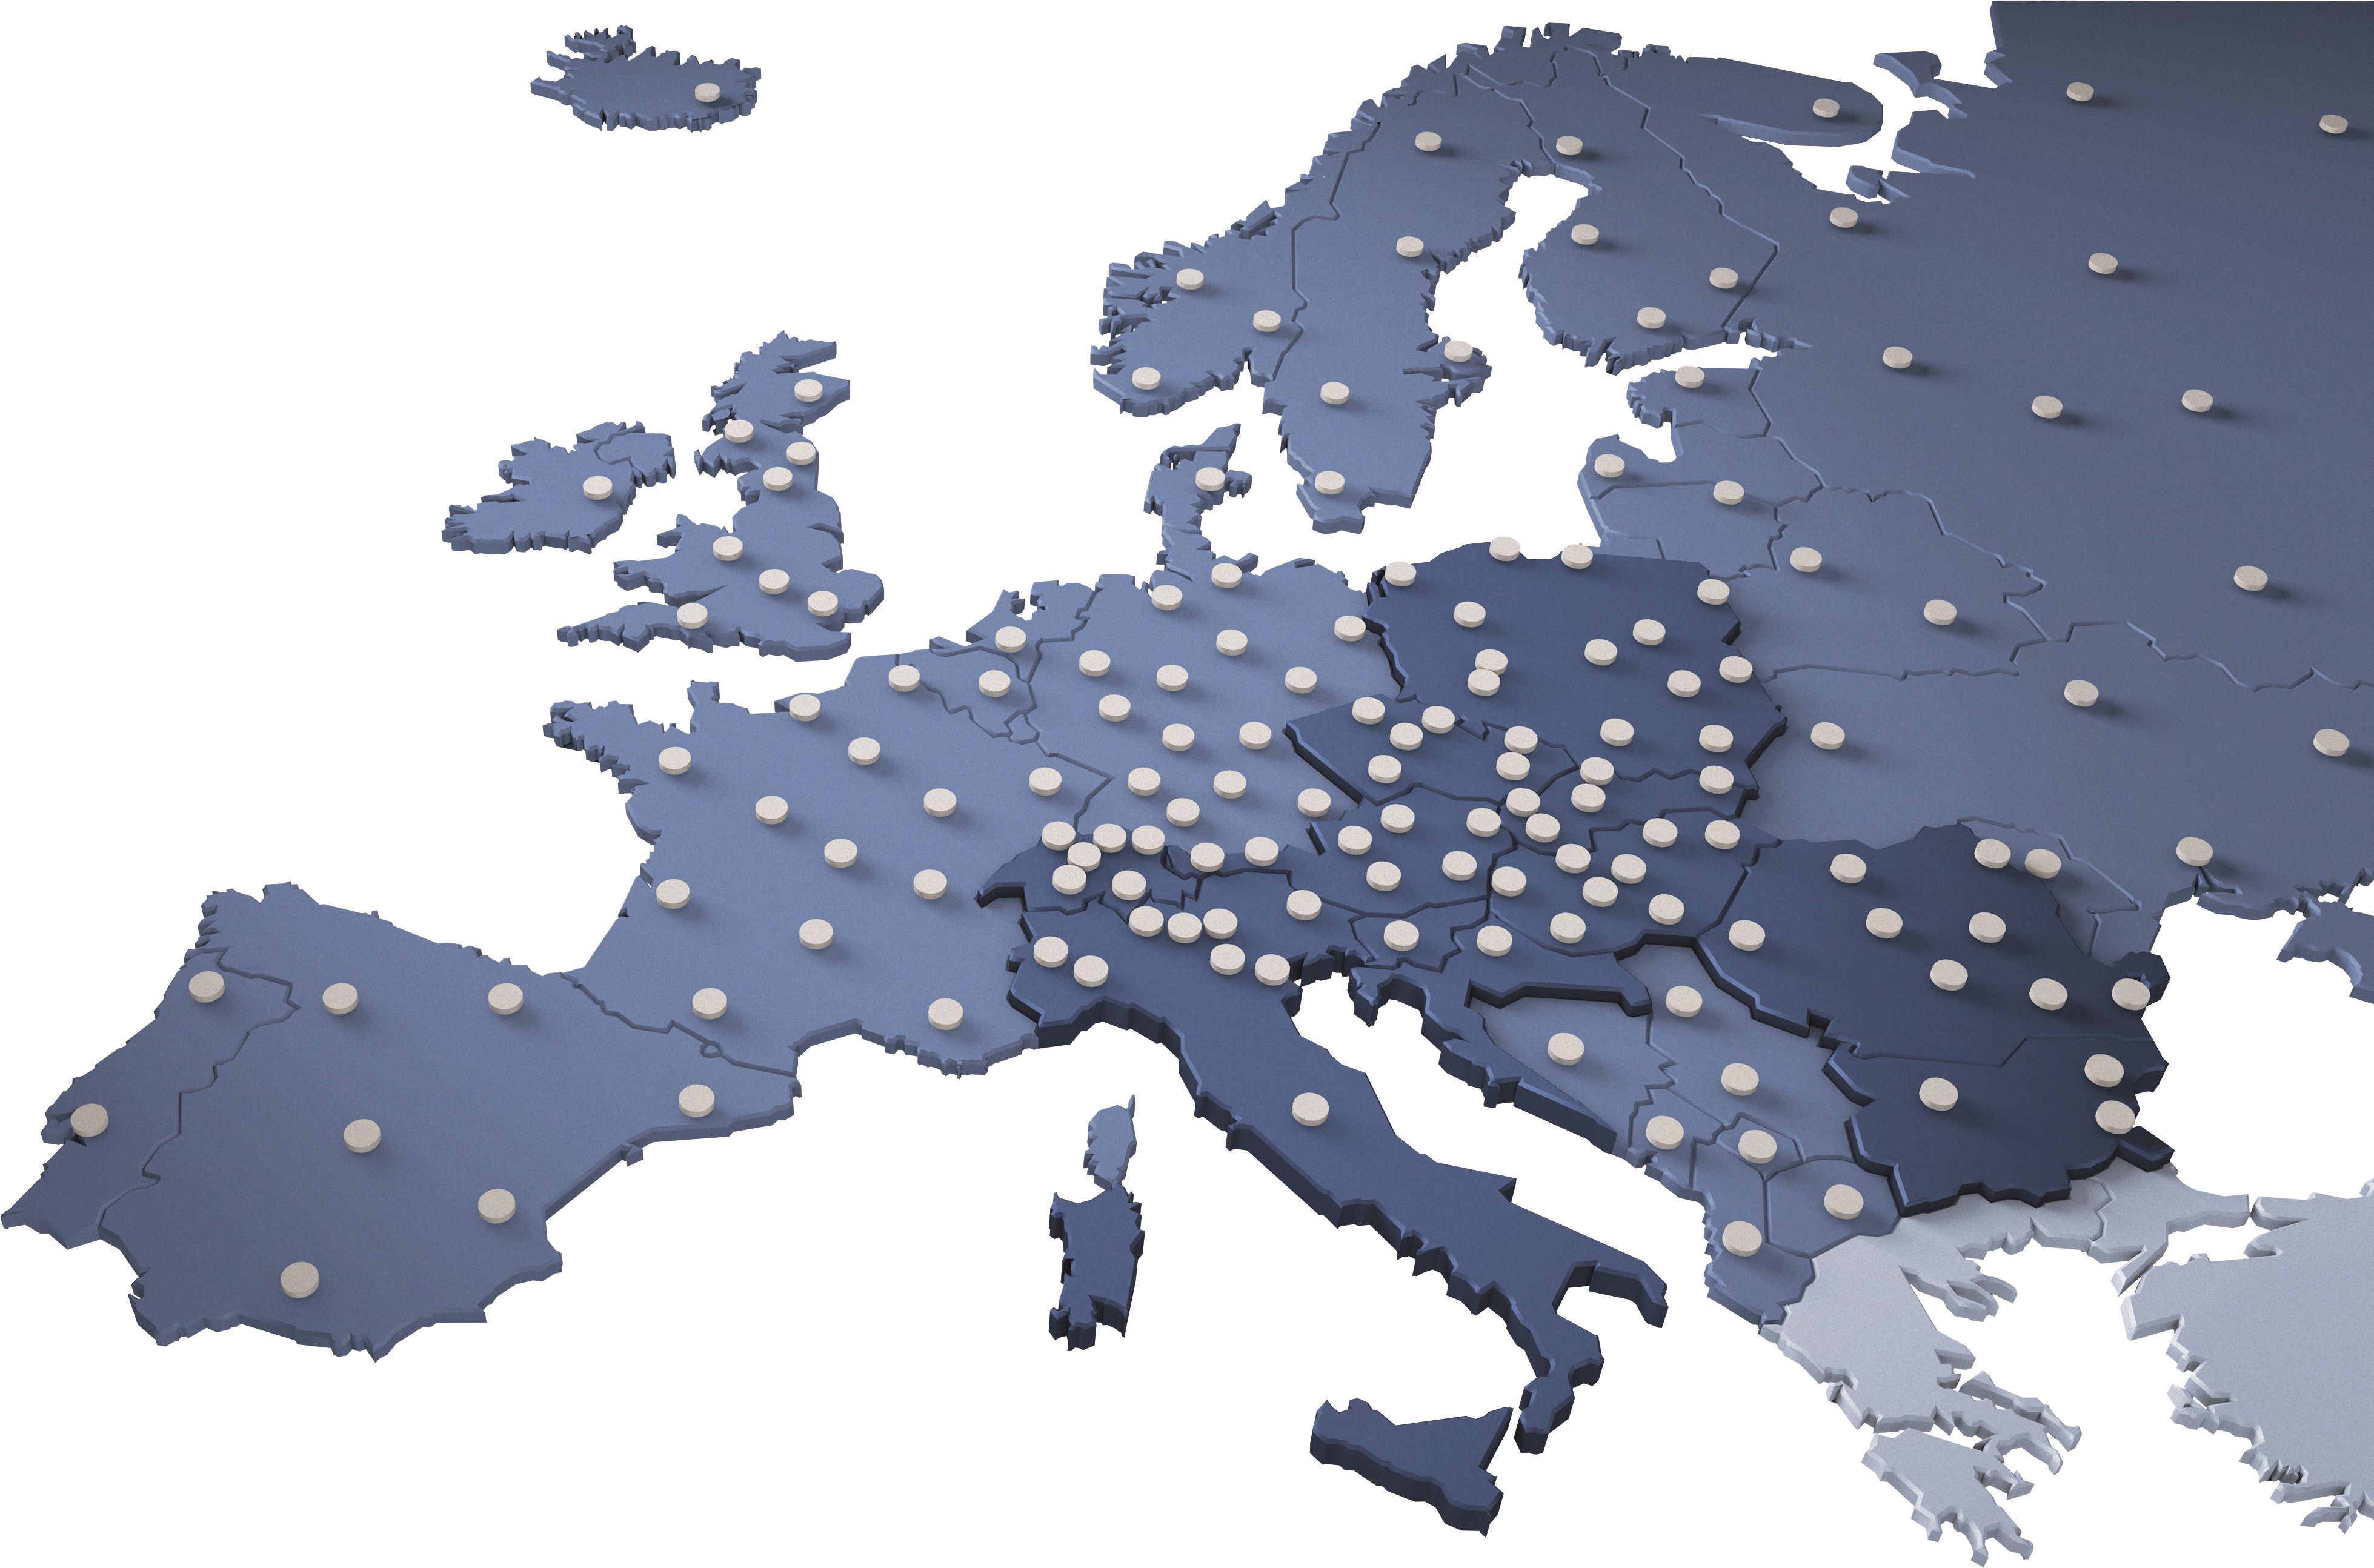 Mreža depoa širom Evrope